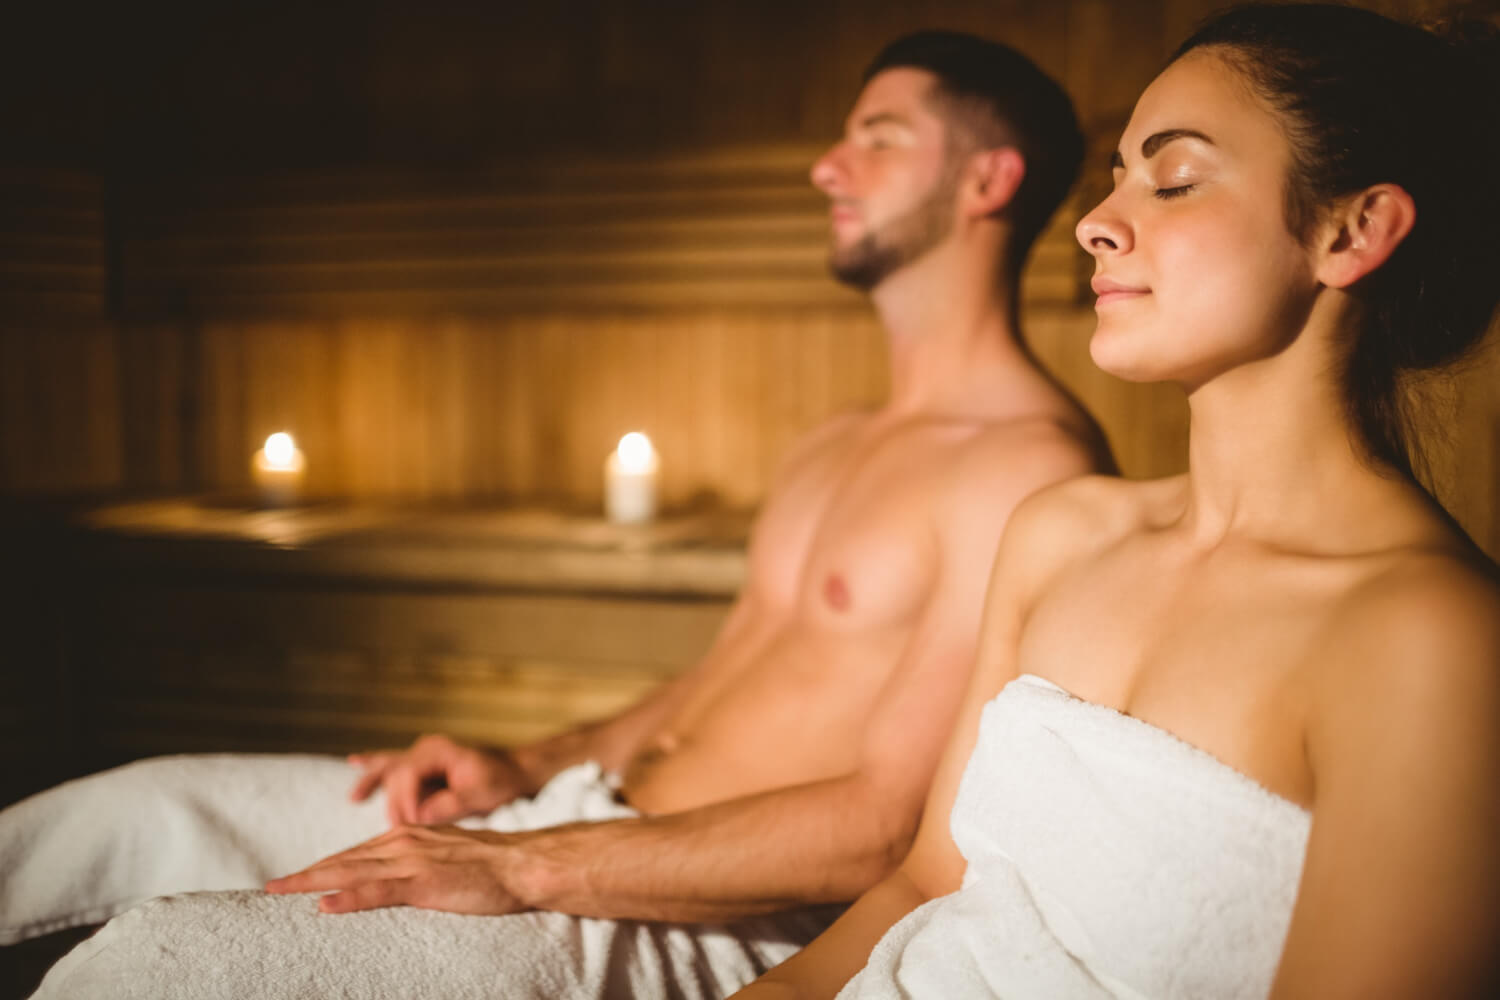 para korzysta ze zdrowotnych właściwości seansów w saunie